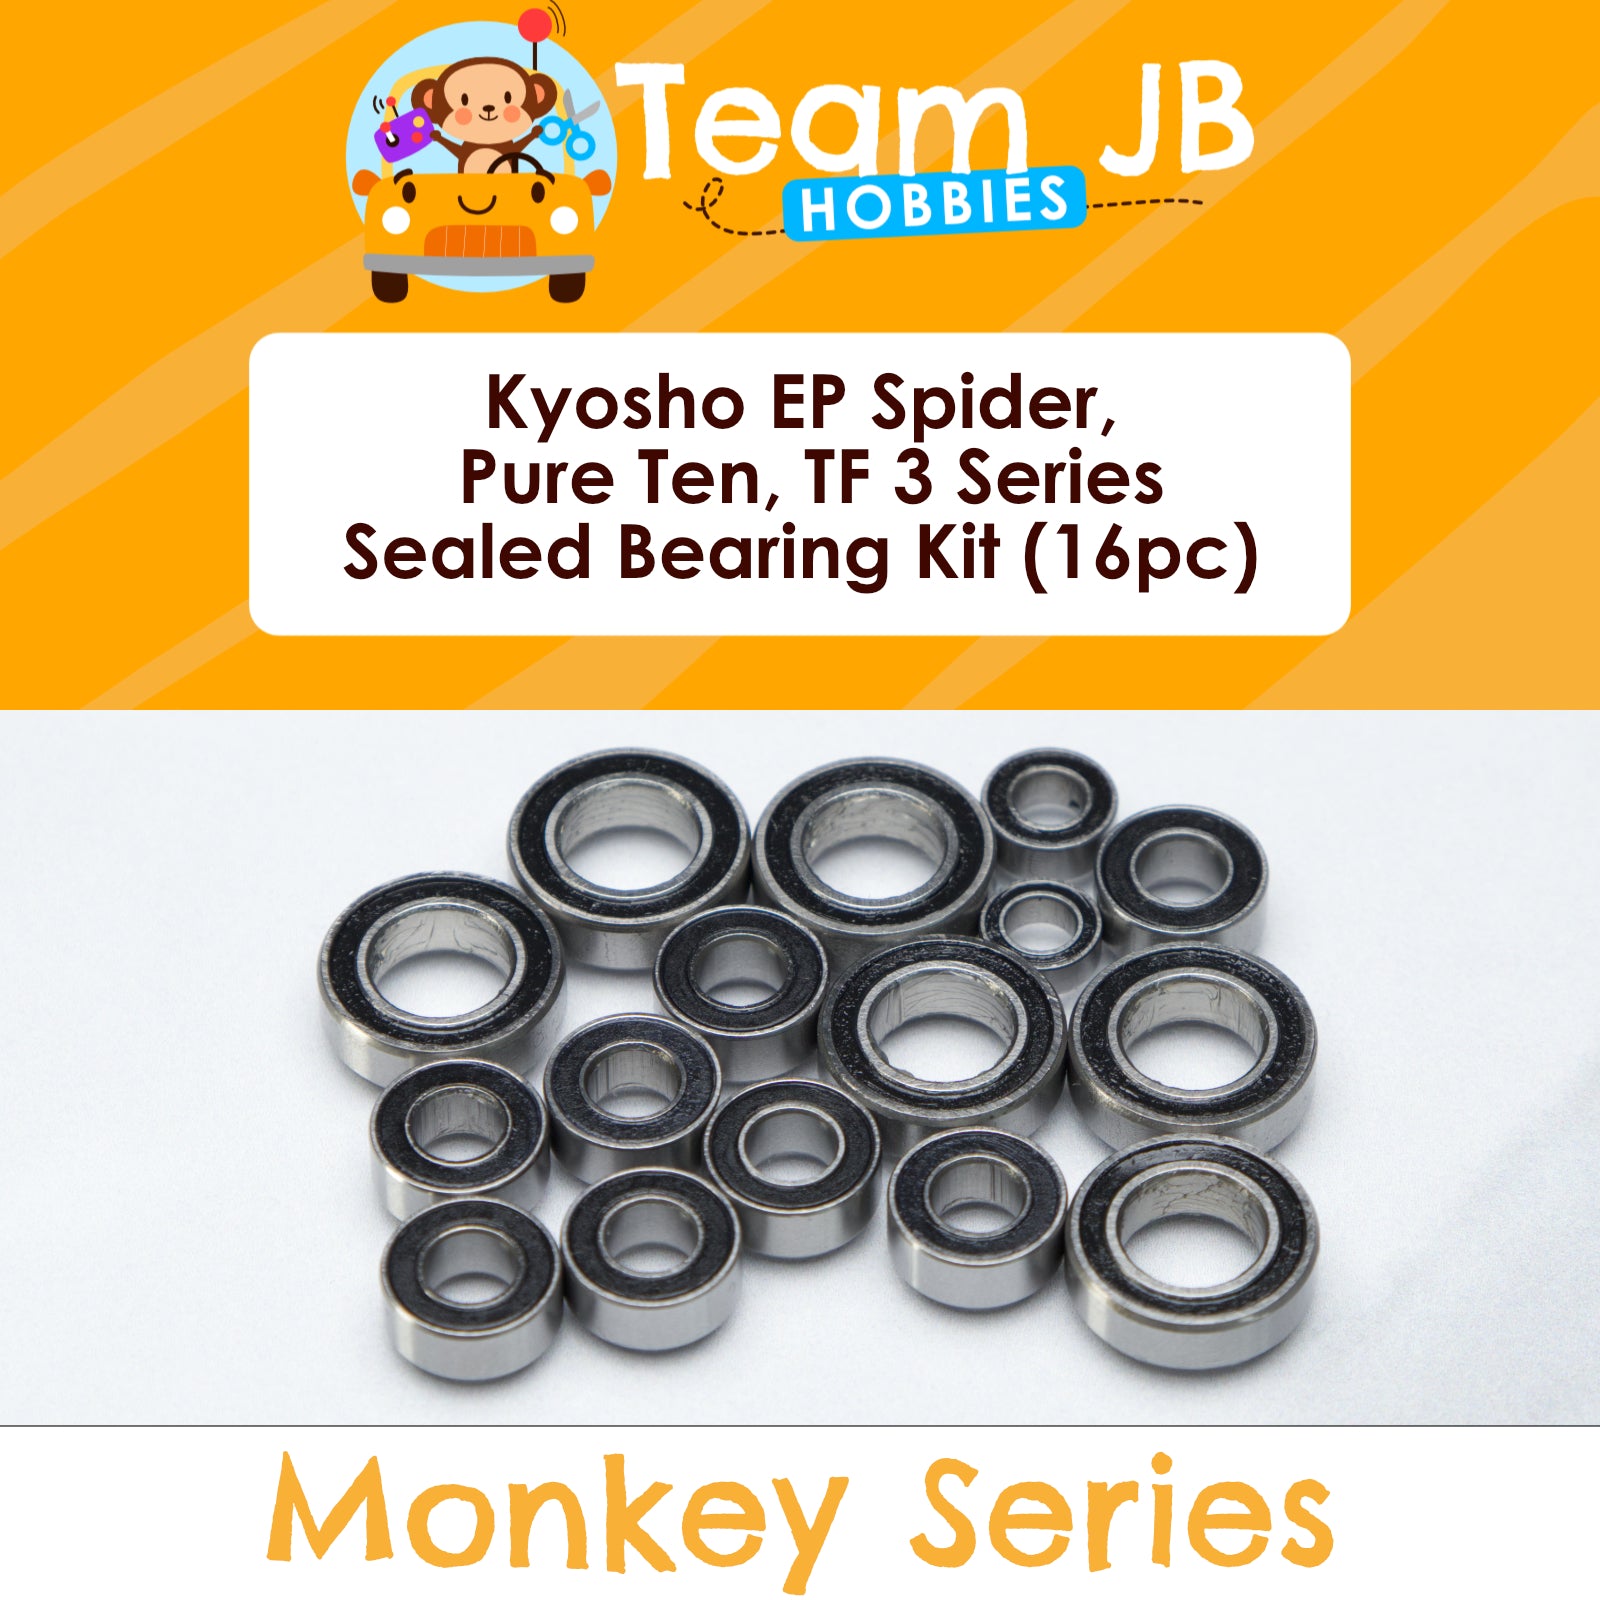 Kyosho EP Spider, Pure Ten, TF 3 Series - Sealed Bearing Kit